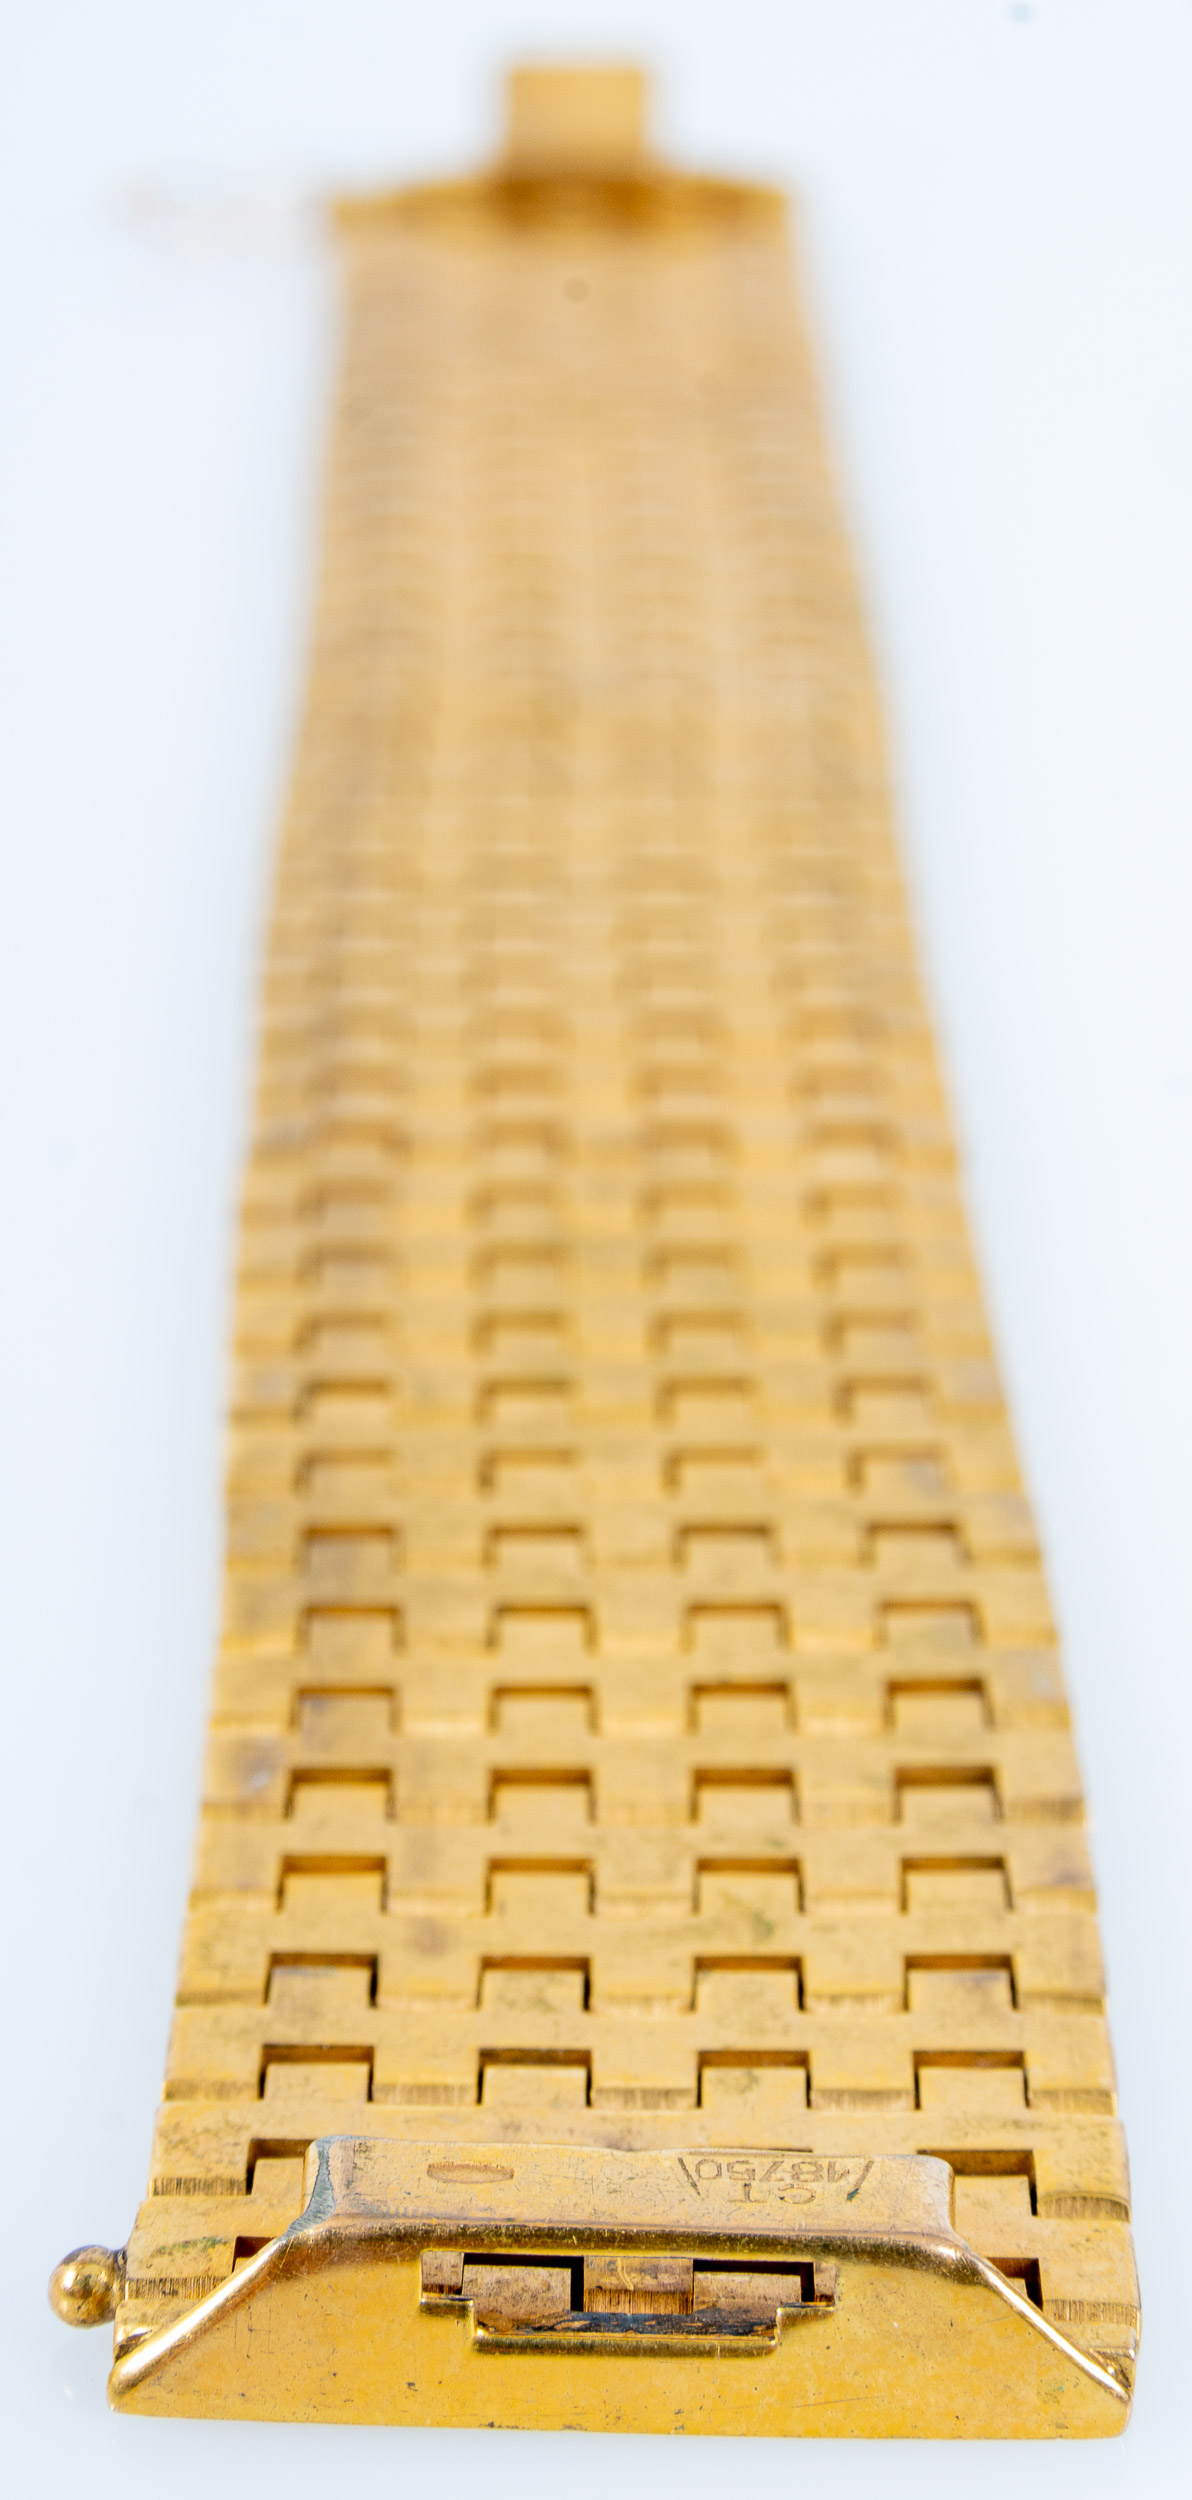 Sehr breites "Panzer" Armband/ Gliederarmband aus 18 karätigem Gelbgold mit Kastenschloss & Sicherh - Image 12 of 13